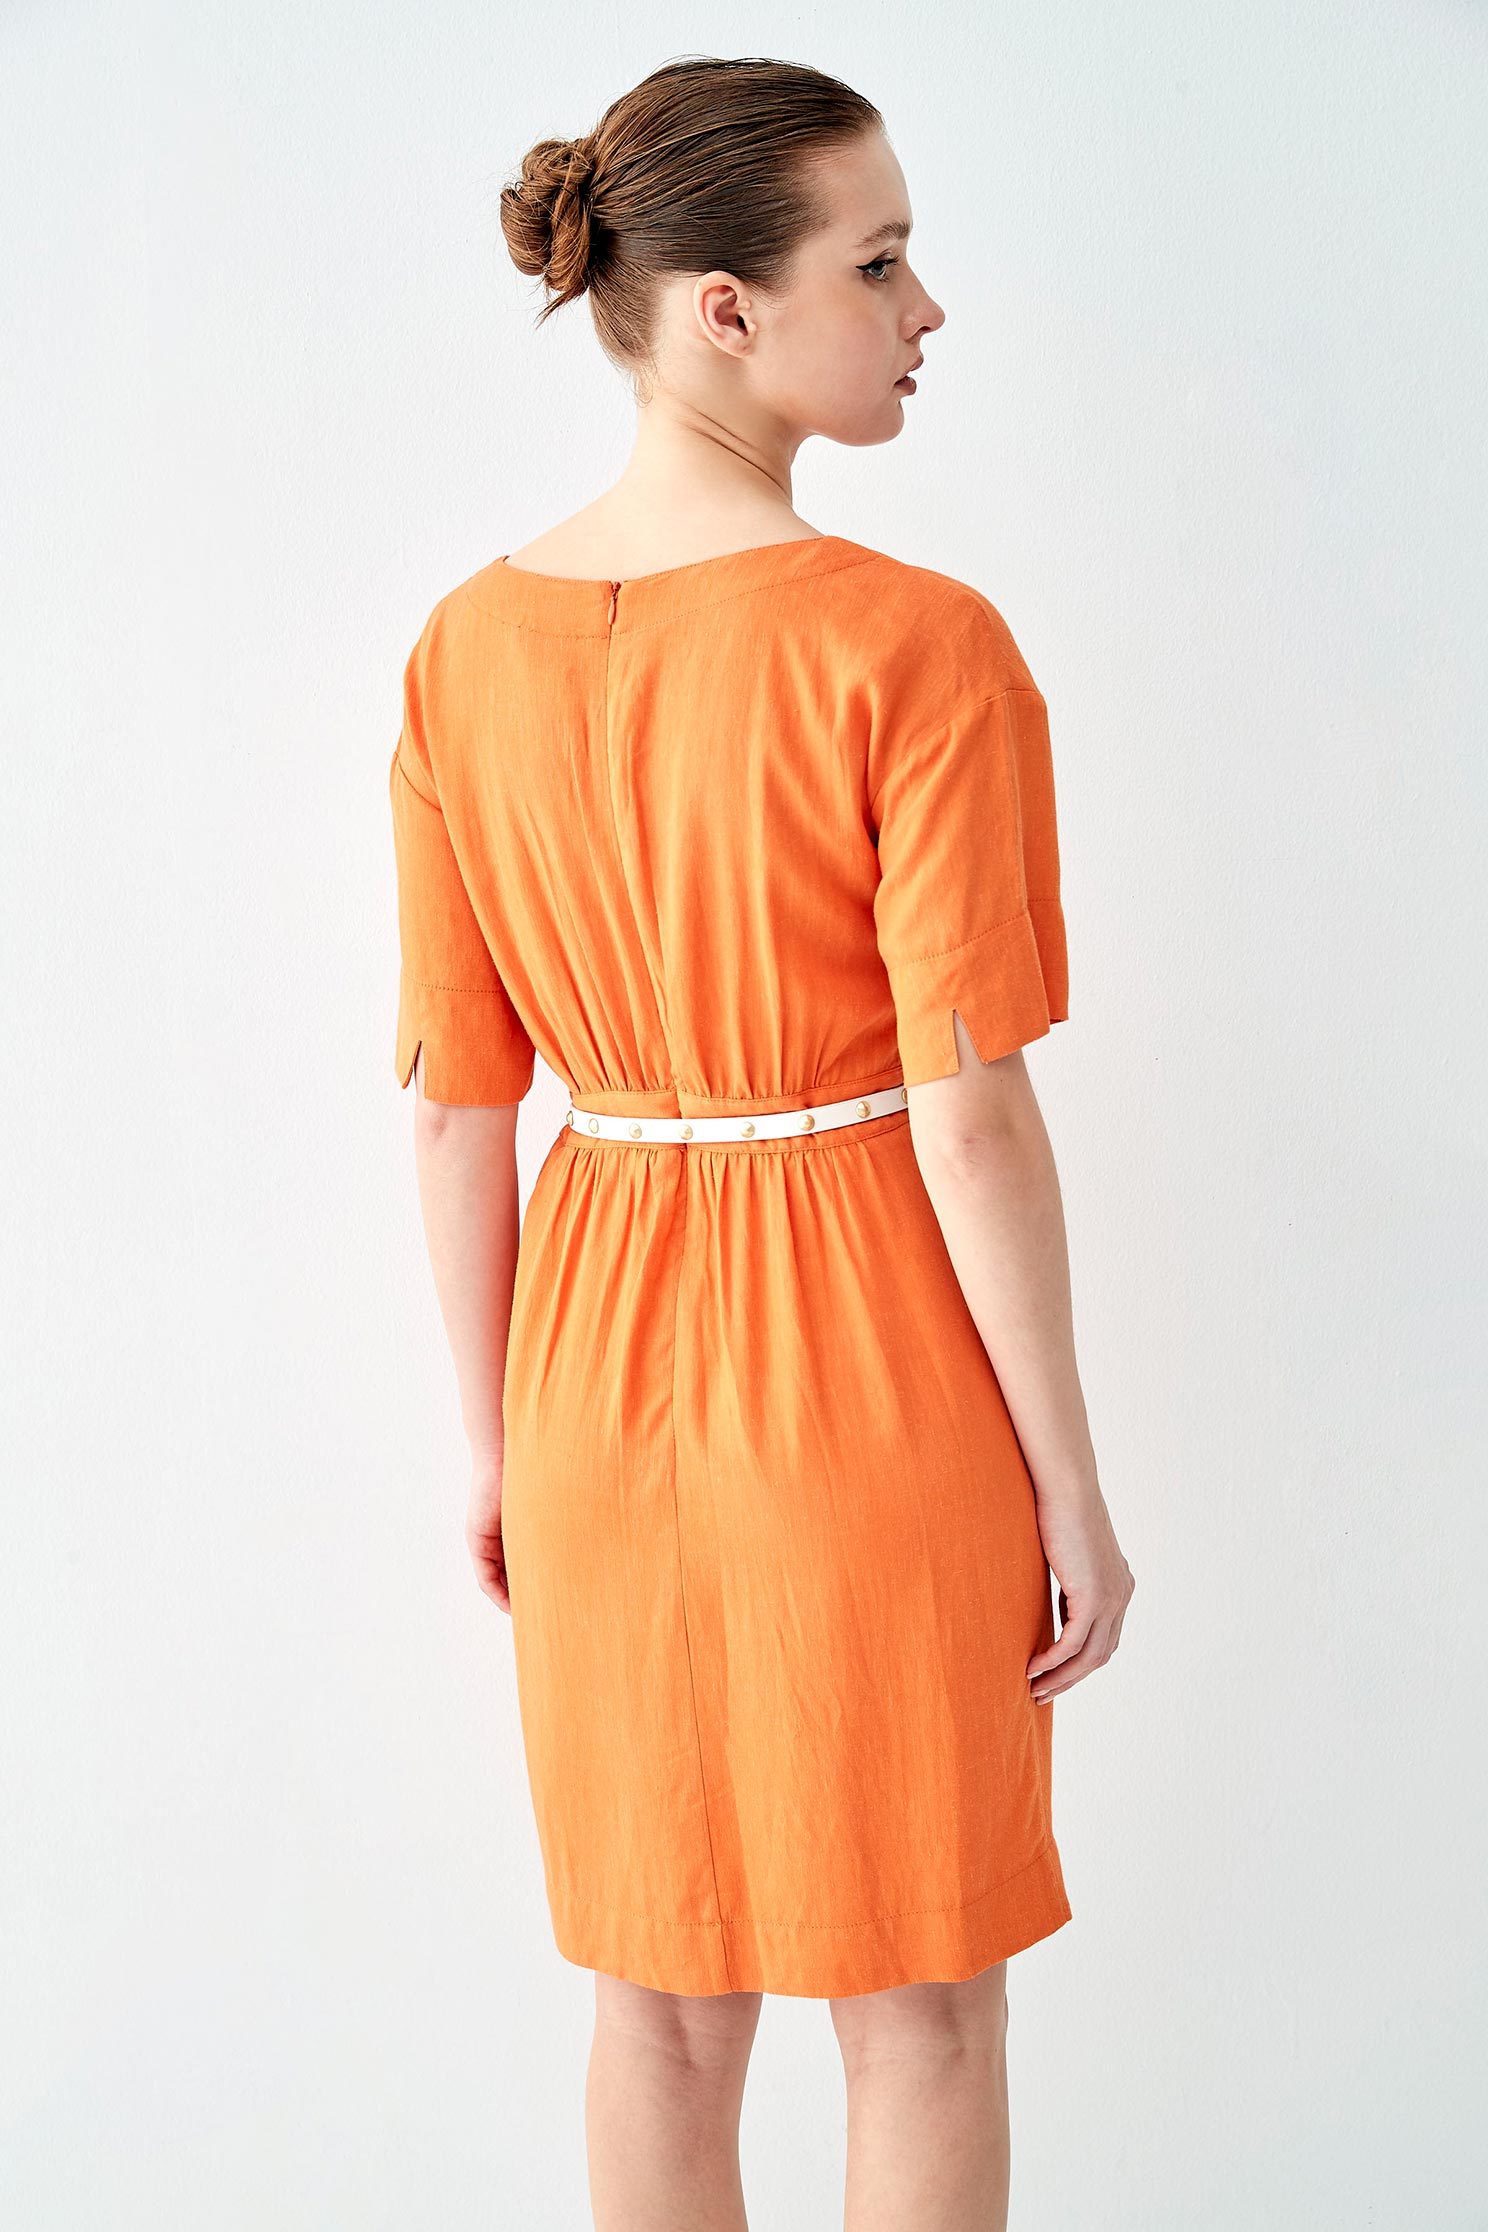 橘色翻領洋裝橘色翻領洋裝,一般洋裝,春夏穿搭,短袖洋裝,舒適主義